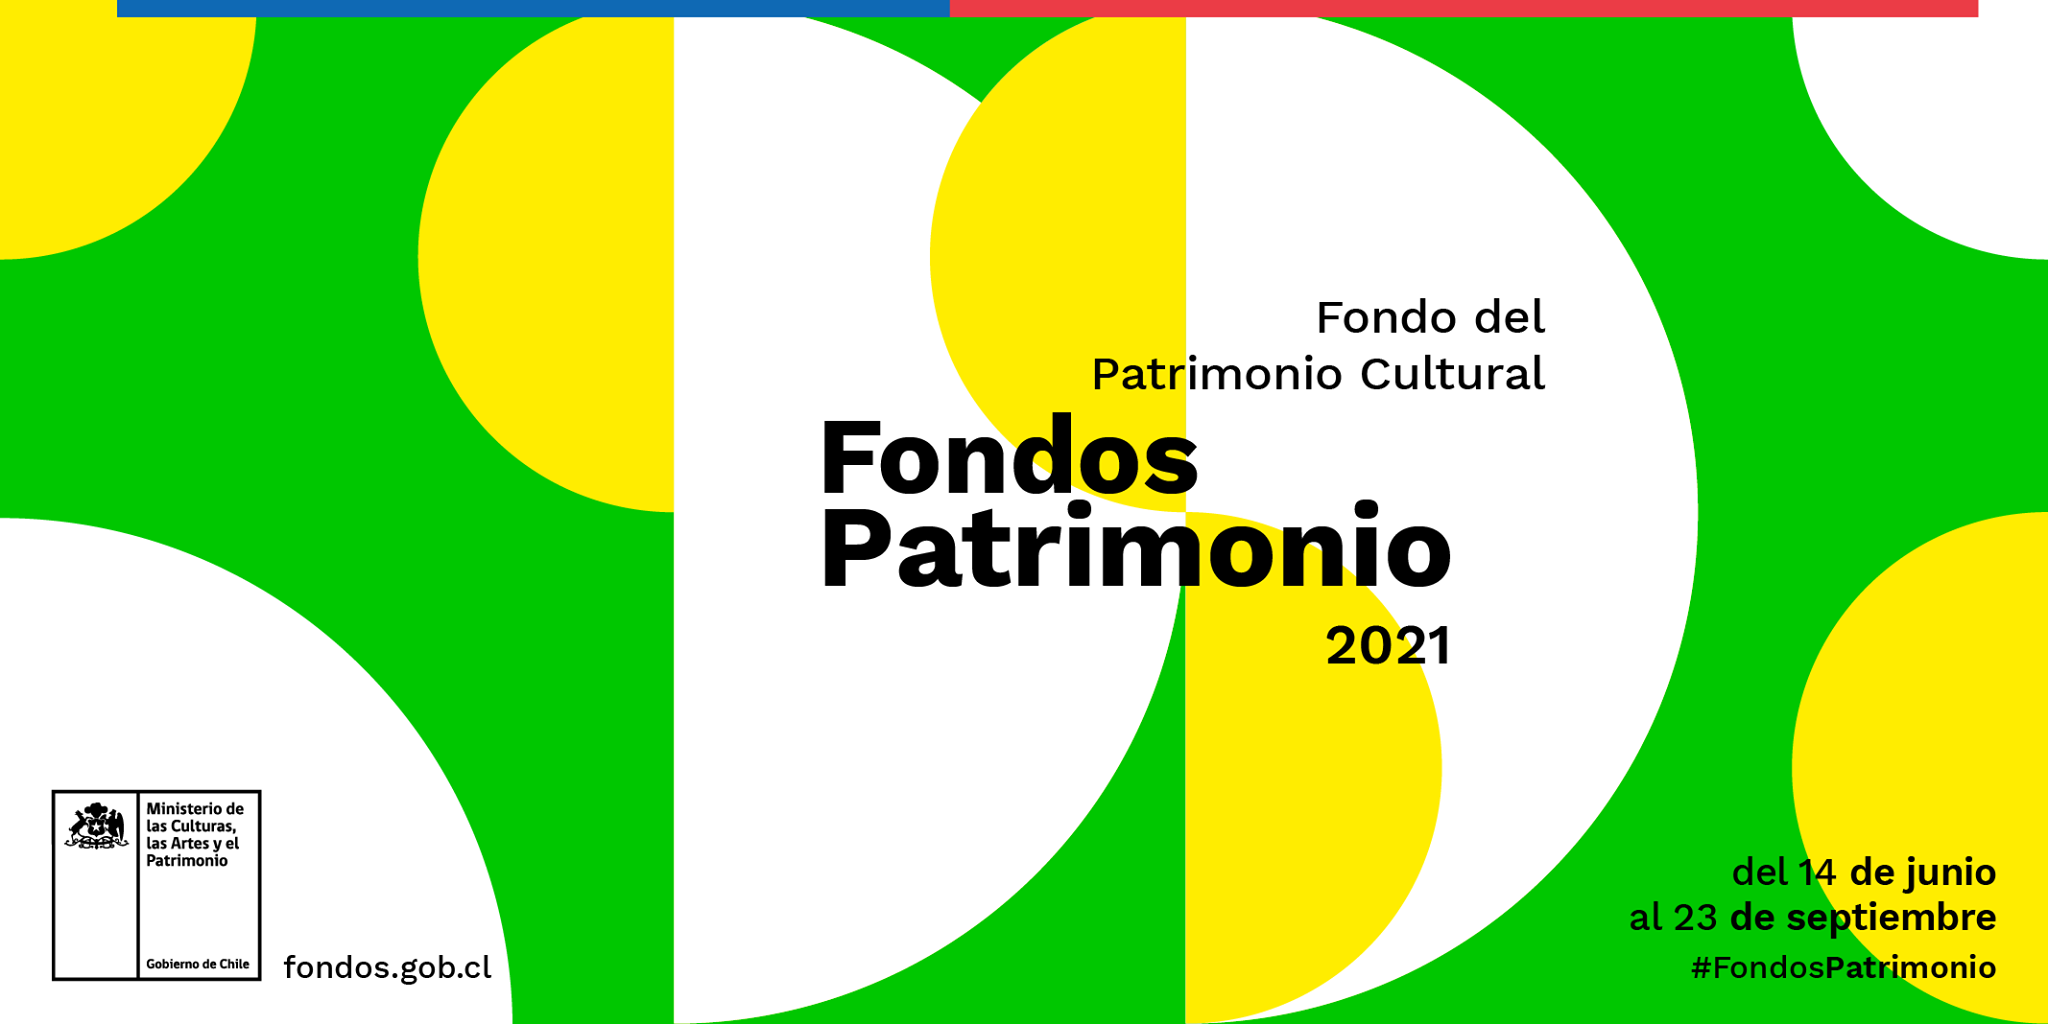 CAÑETINOS YA PUEDEN POSTULAR AL FONDO DEL PATRIMONIO CULTURAL 2021